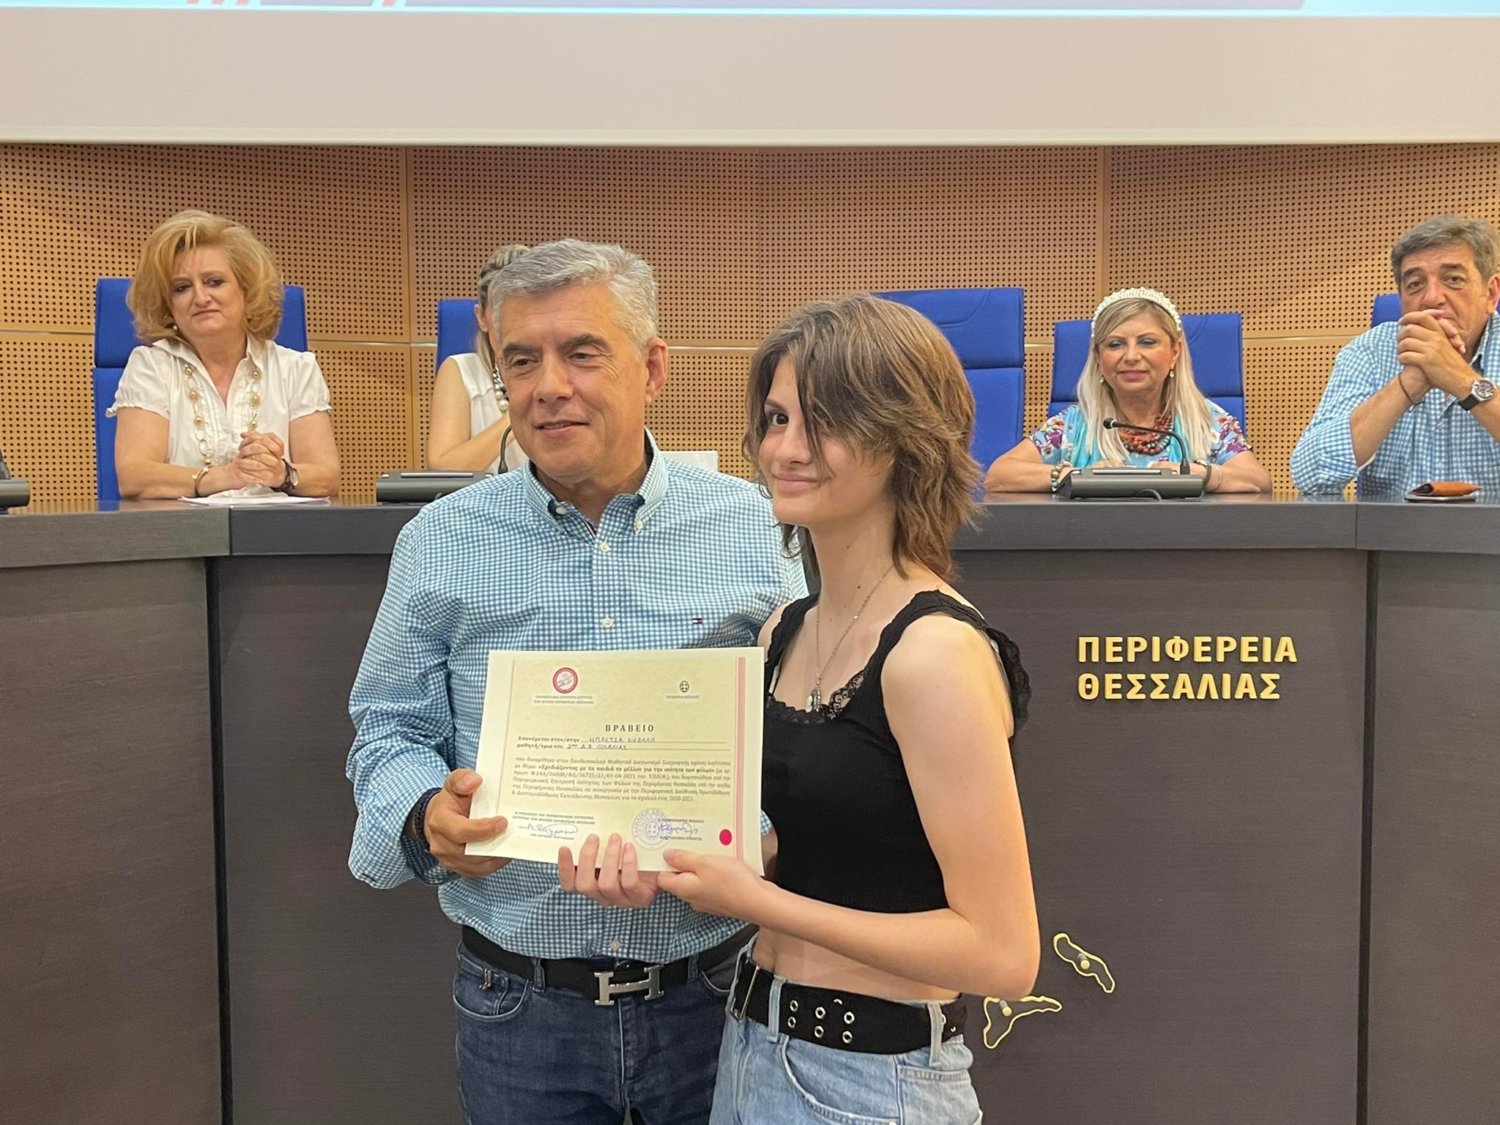 Η μαθήτρια Νεφέλη Μπλέτσα παίρνει το βραβείο από τον Περιφερειάρχη Θεσσαλίας Κώστα Αγοραστό